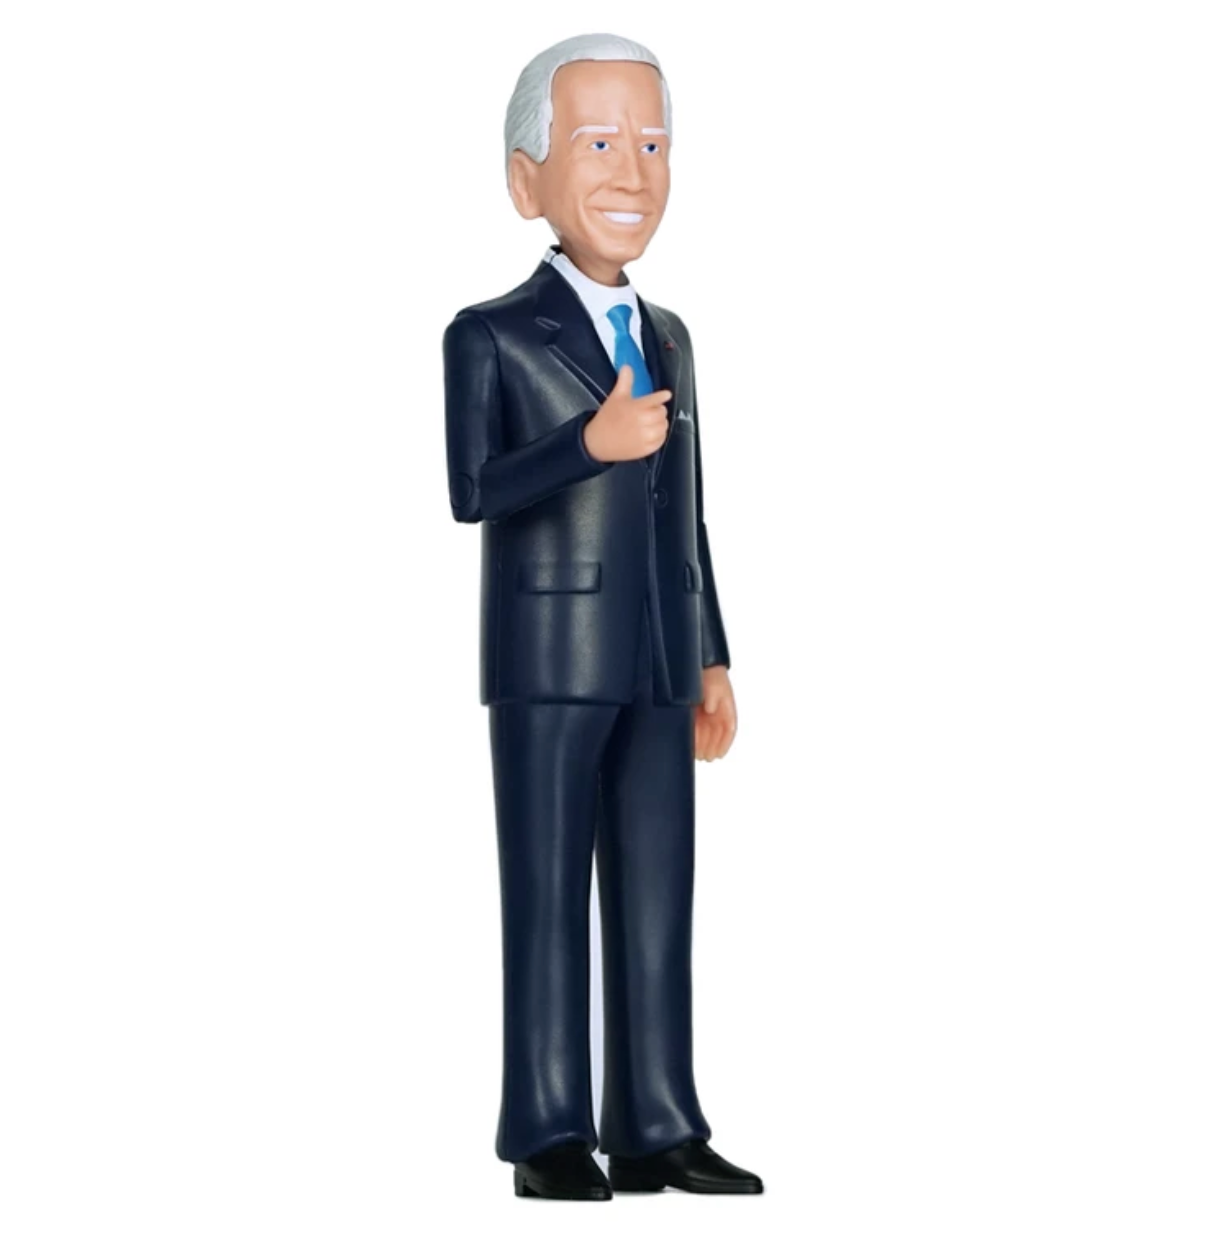 Joe Biden Action Figure